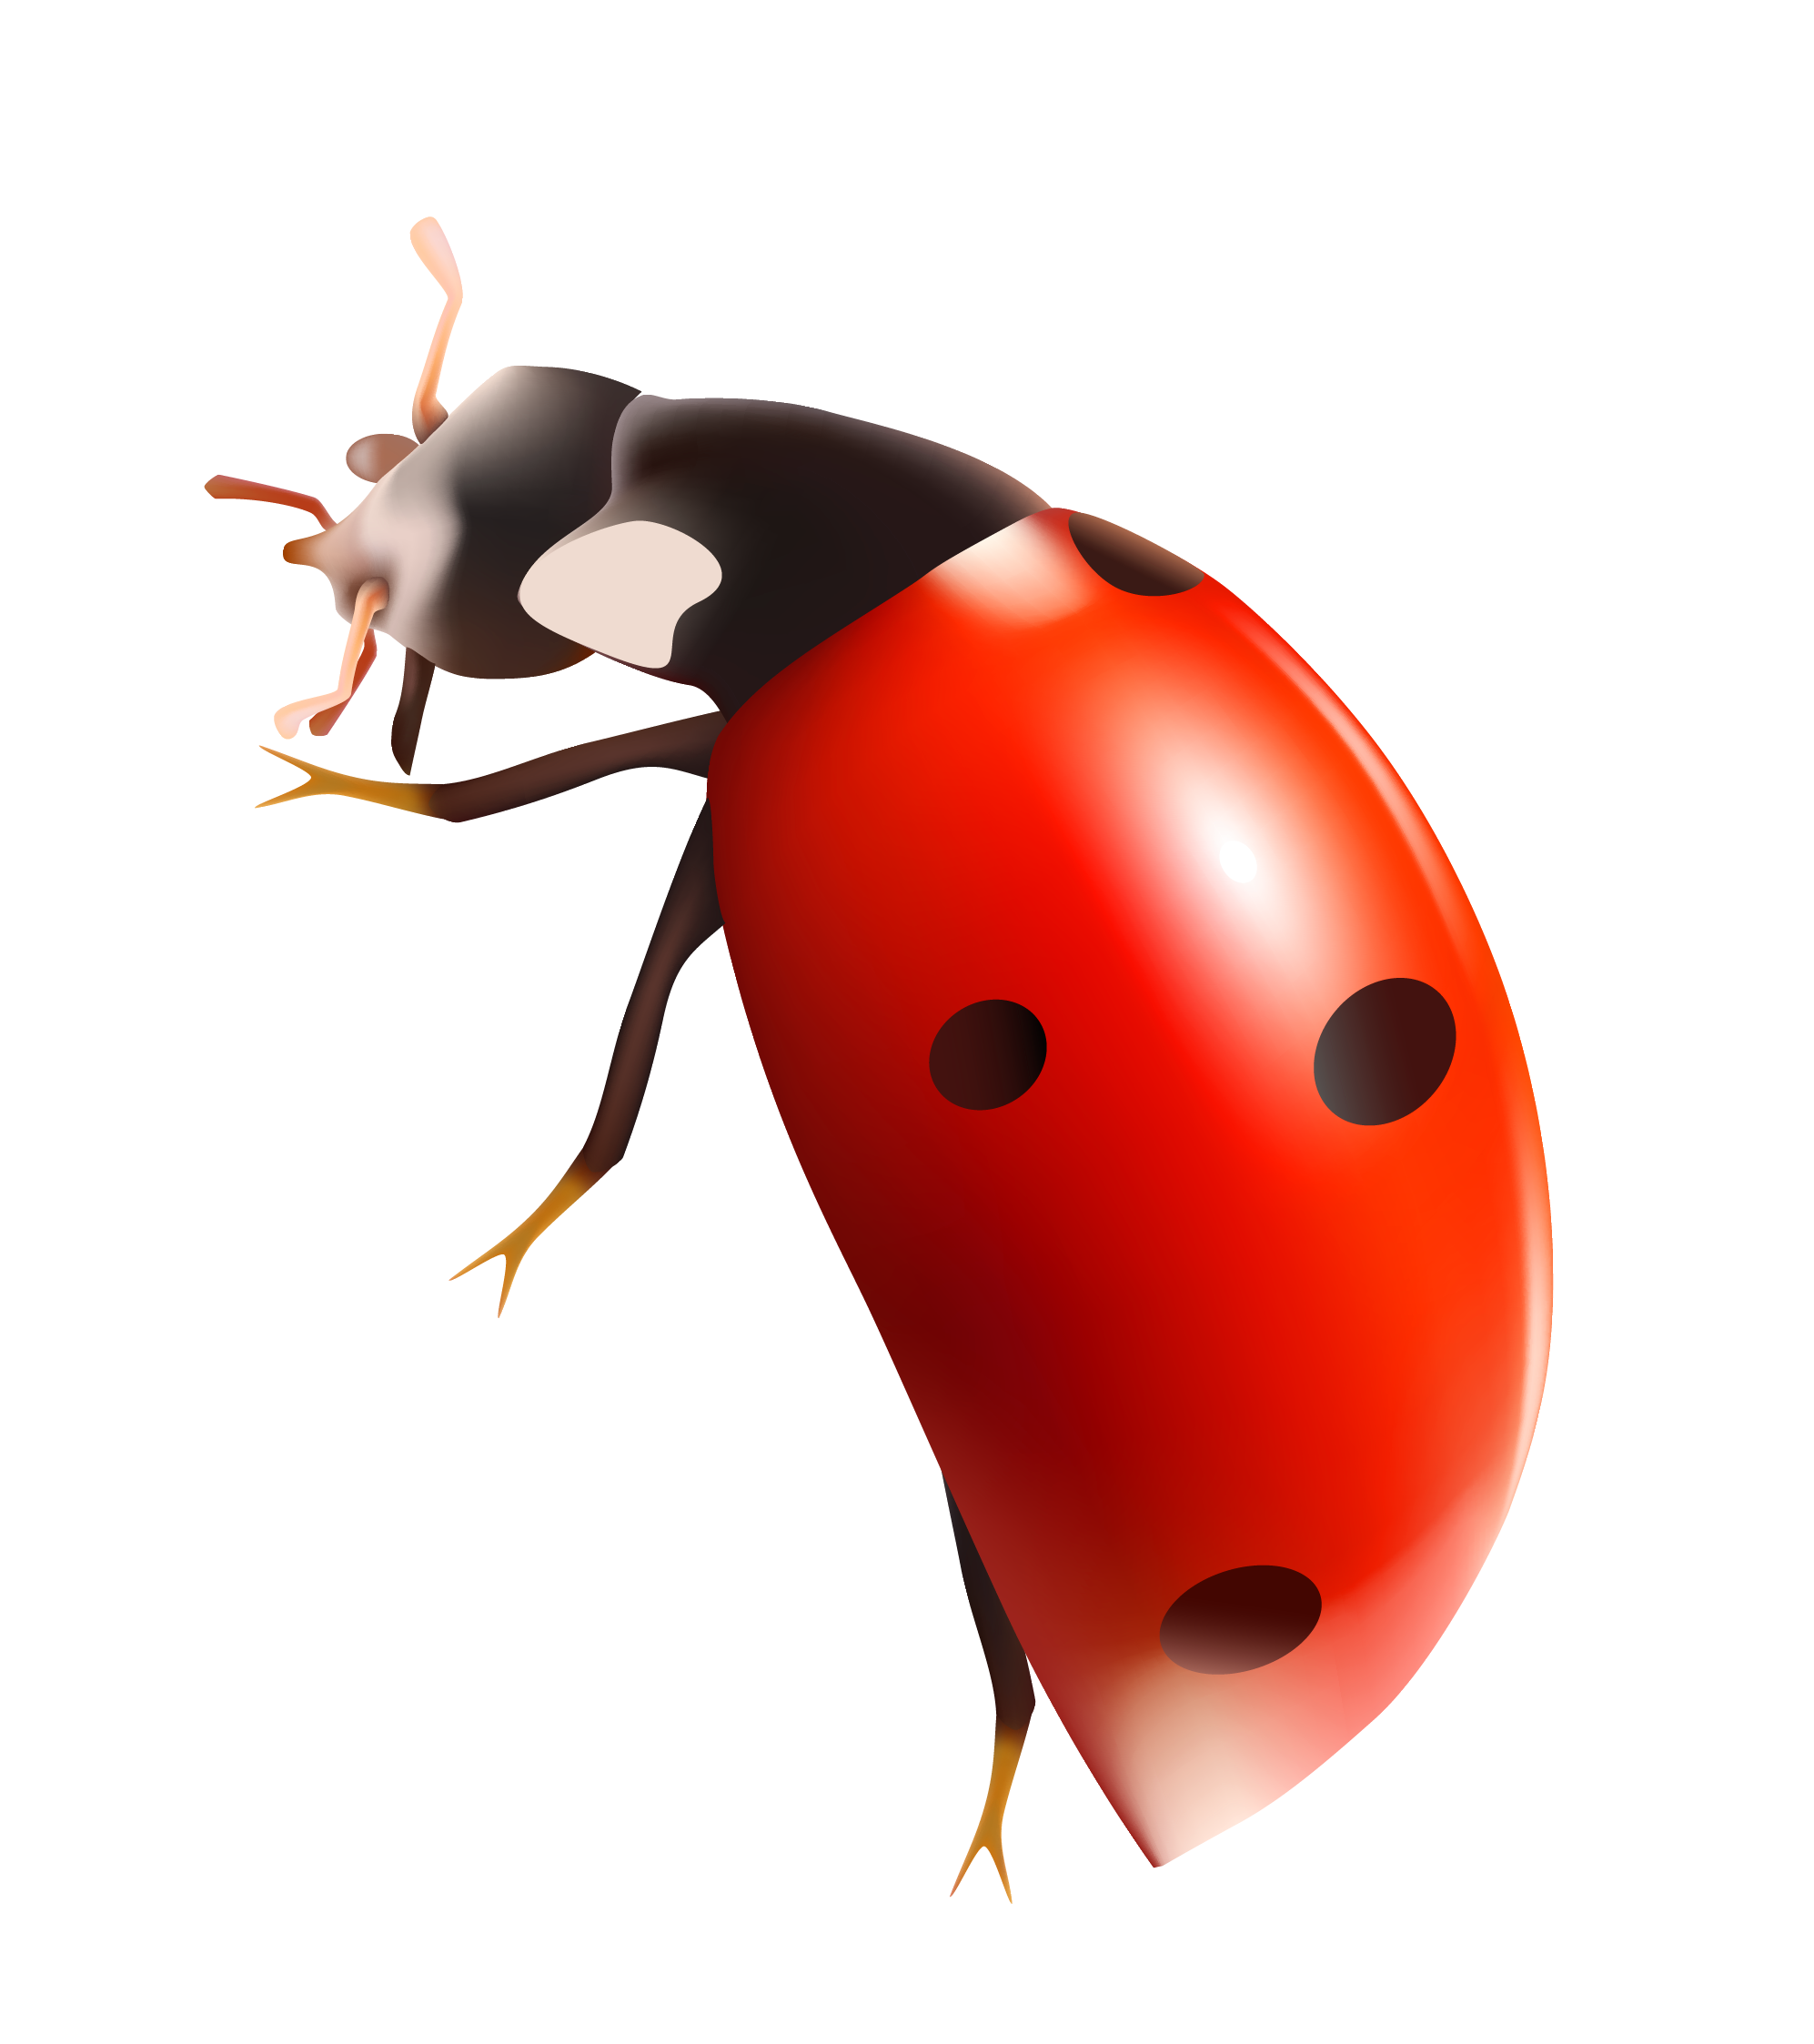 Ladybug Bugs Transparent Image